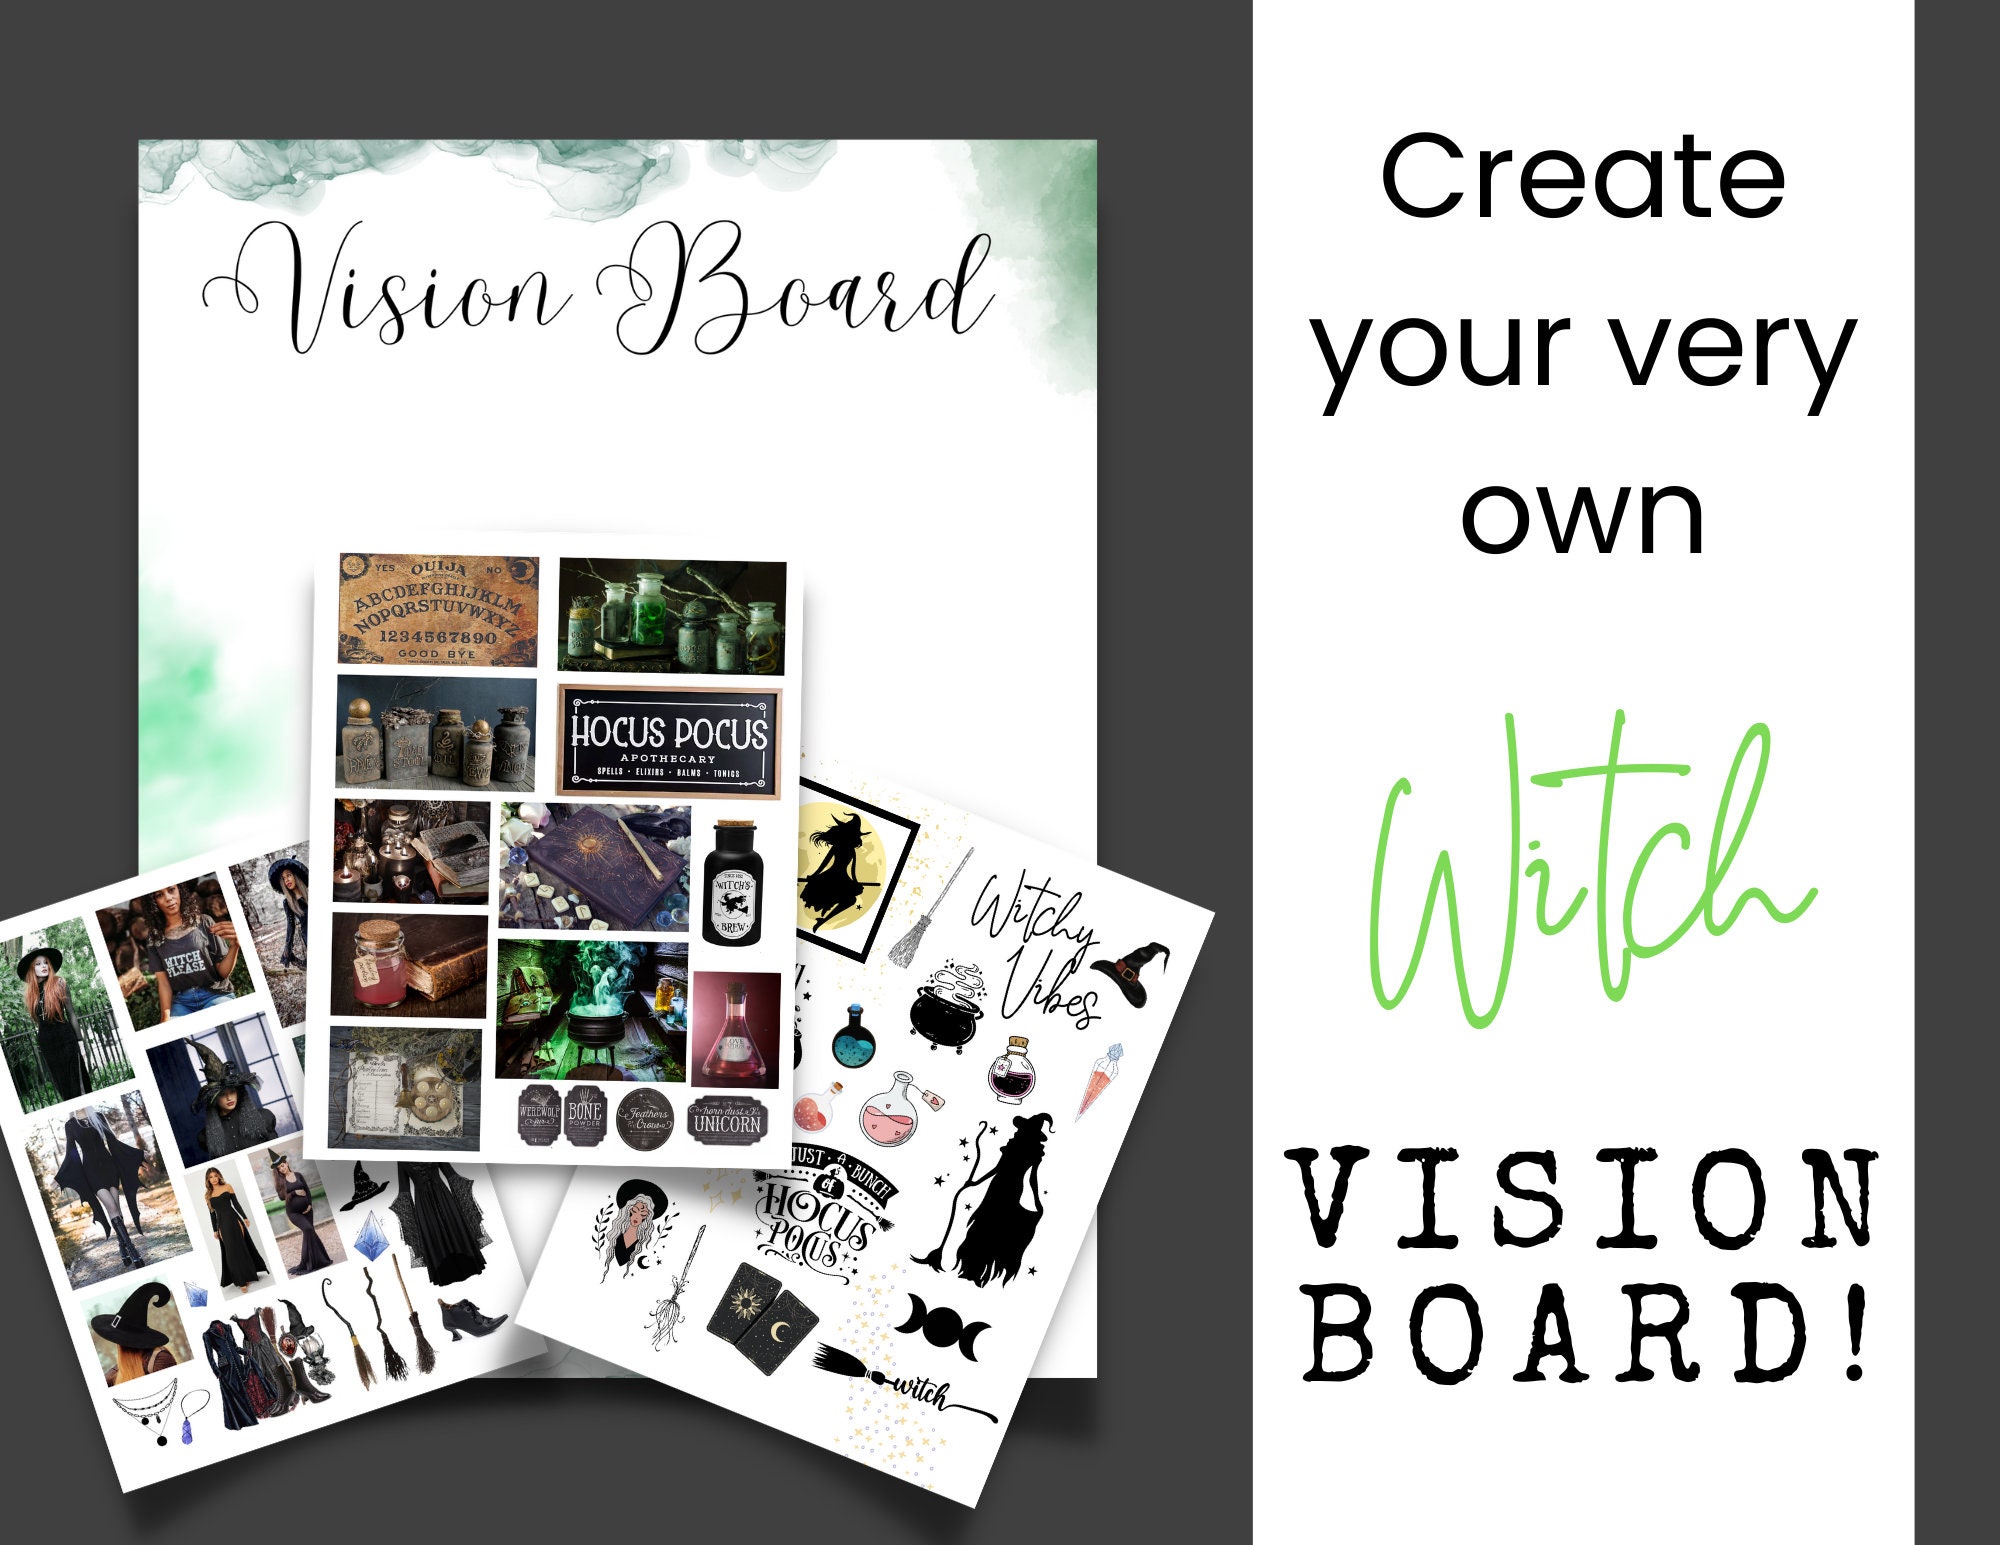 Vision Board — Which Ritual